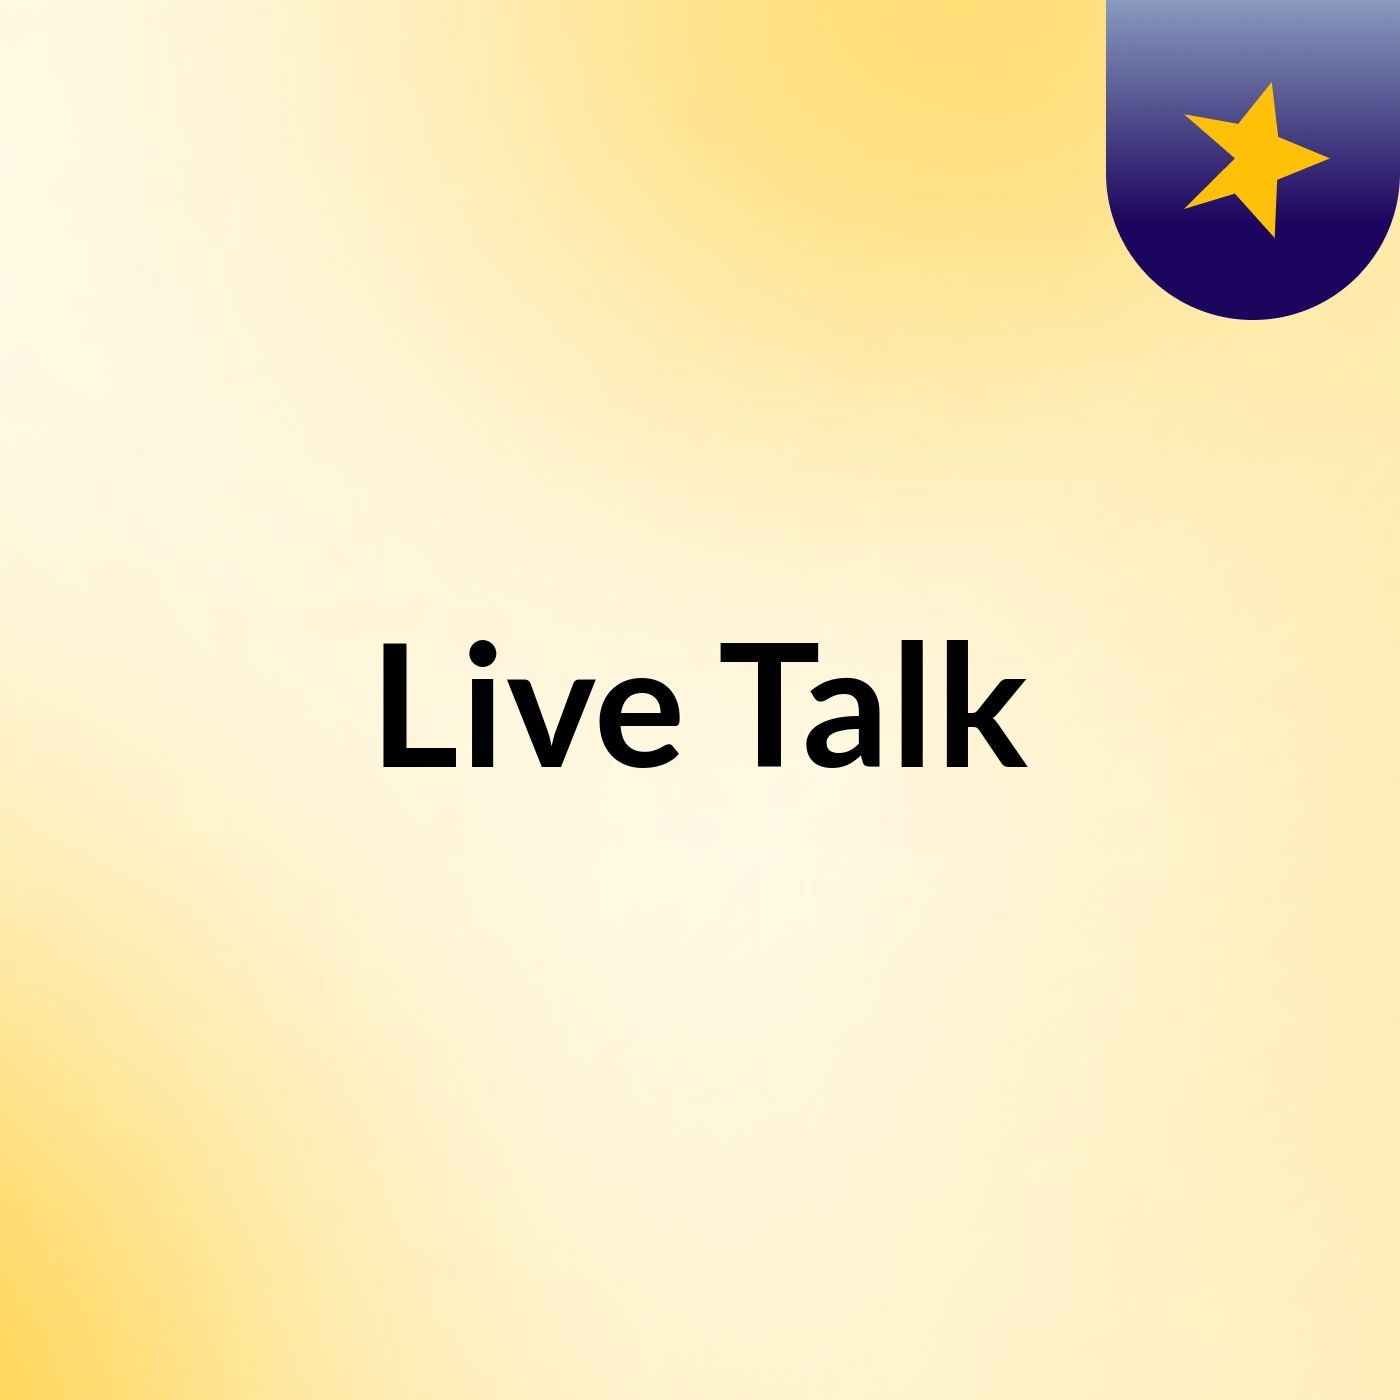 Episode 3 - Live Talk